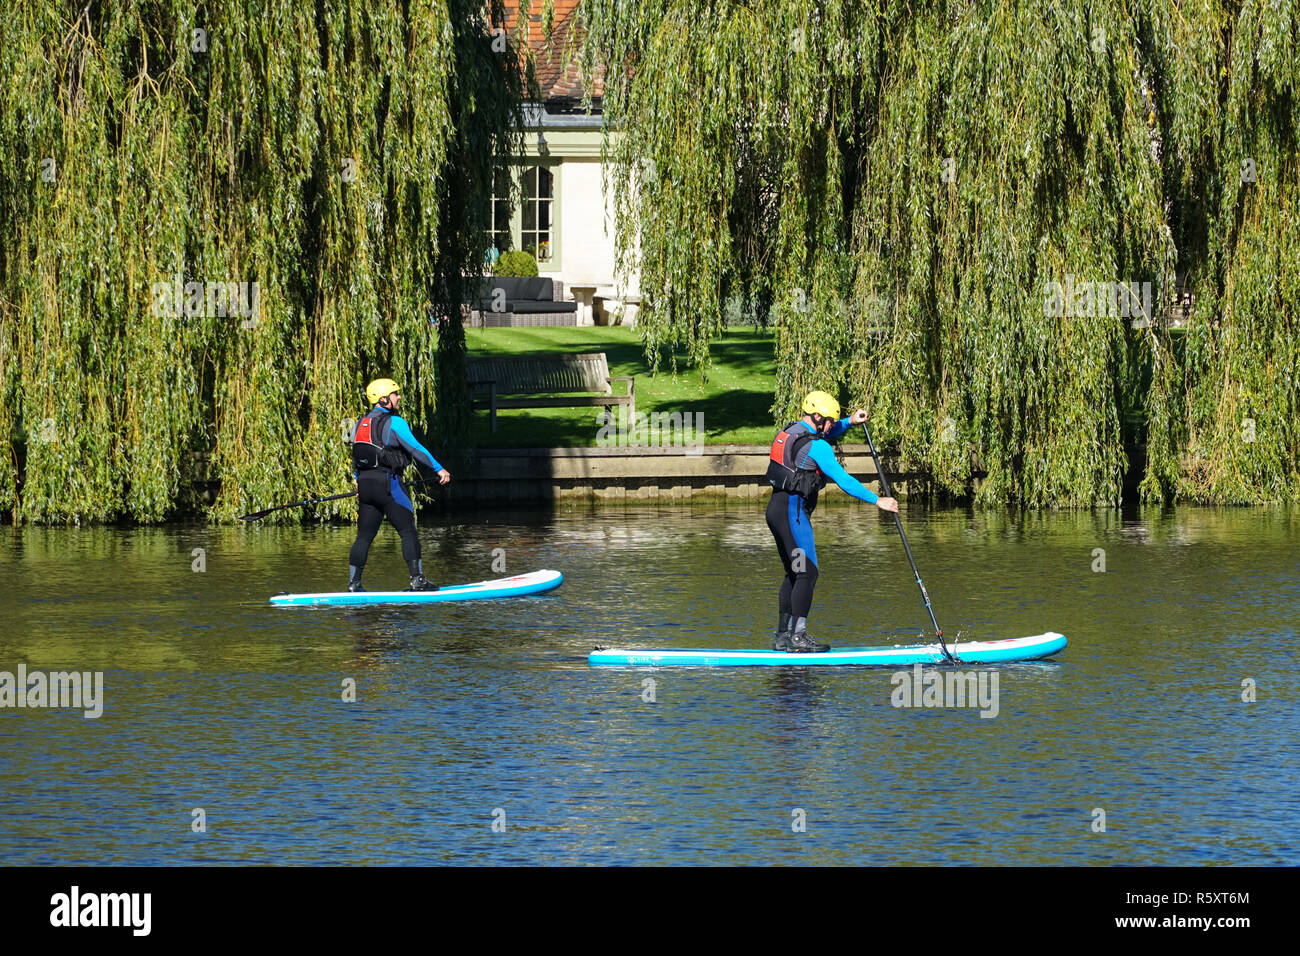 Les gens paddleboarding sur la Tamise près de Medmenham, Buckinghamshire, Angleterre Royaume-Uni UK Banque D'Images